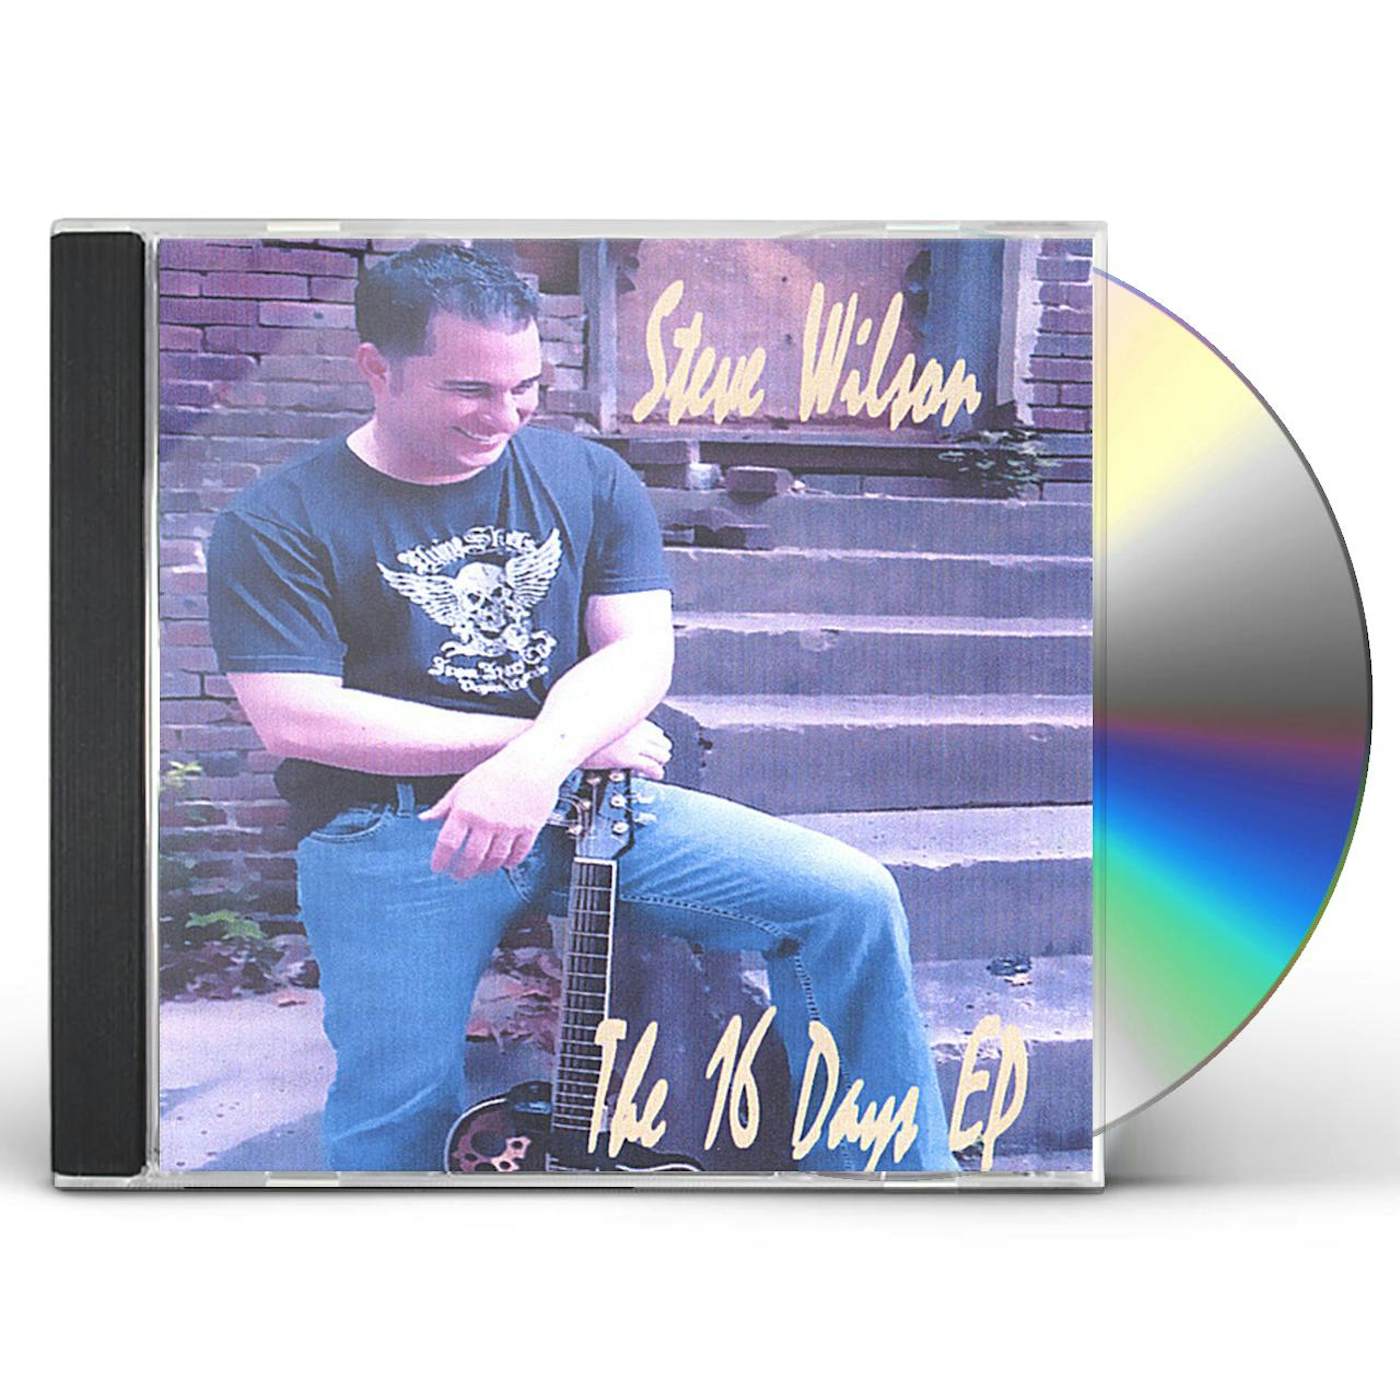 Steve Wilson 16 DAYS EP CD